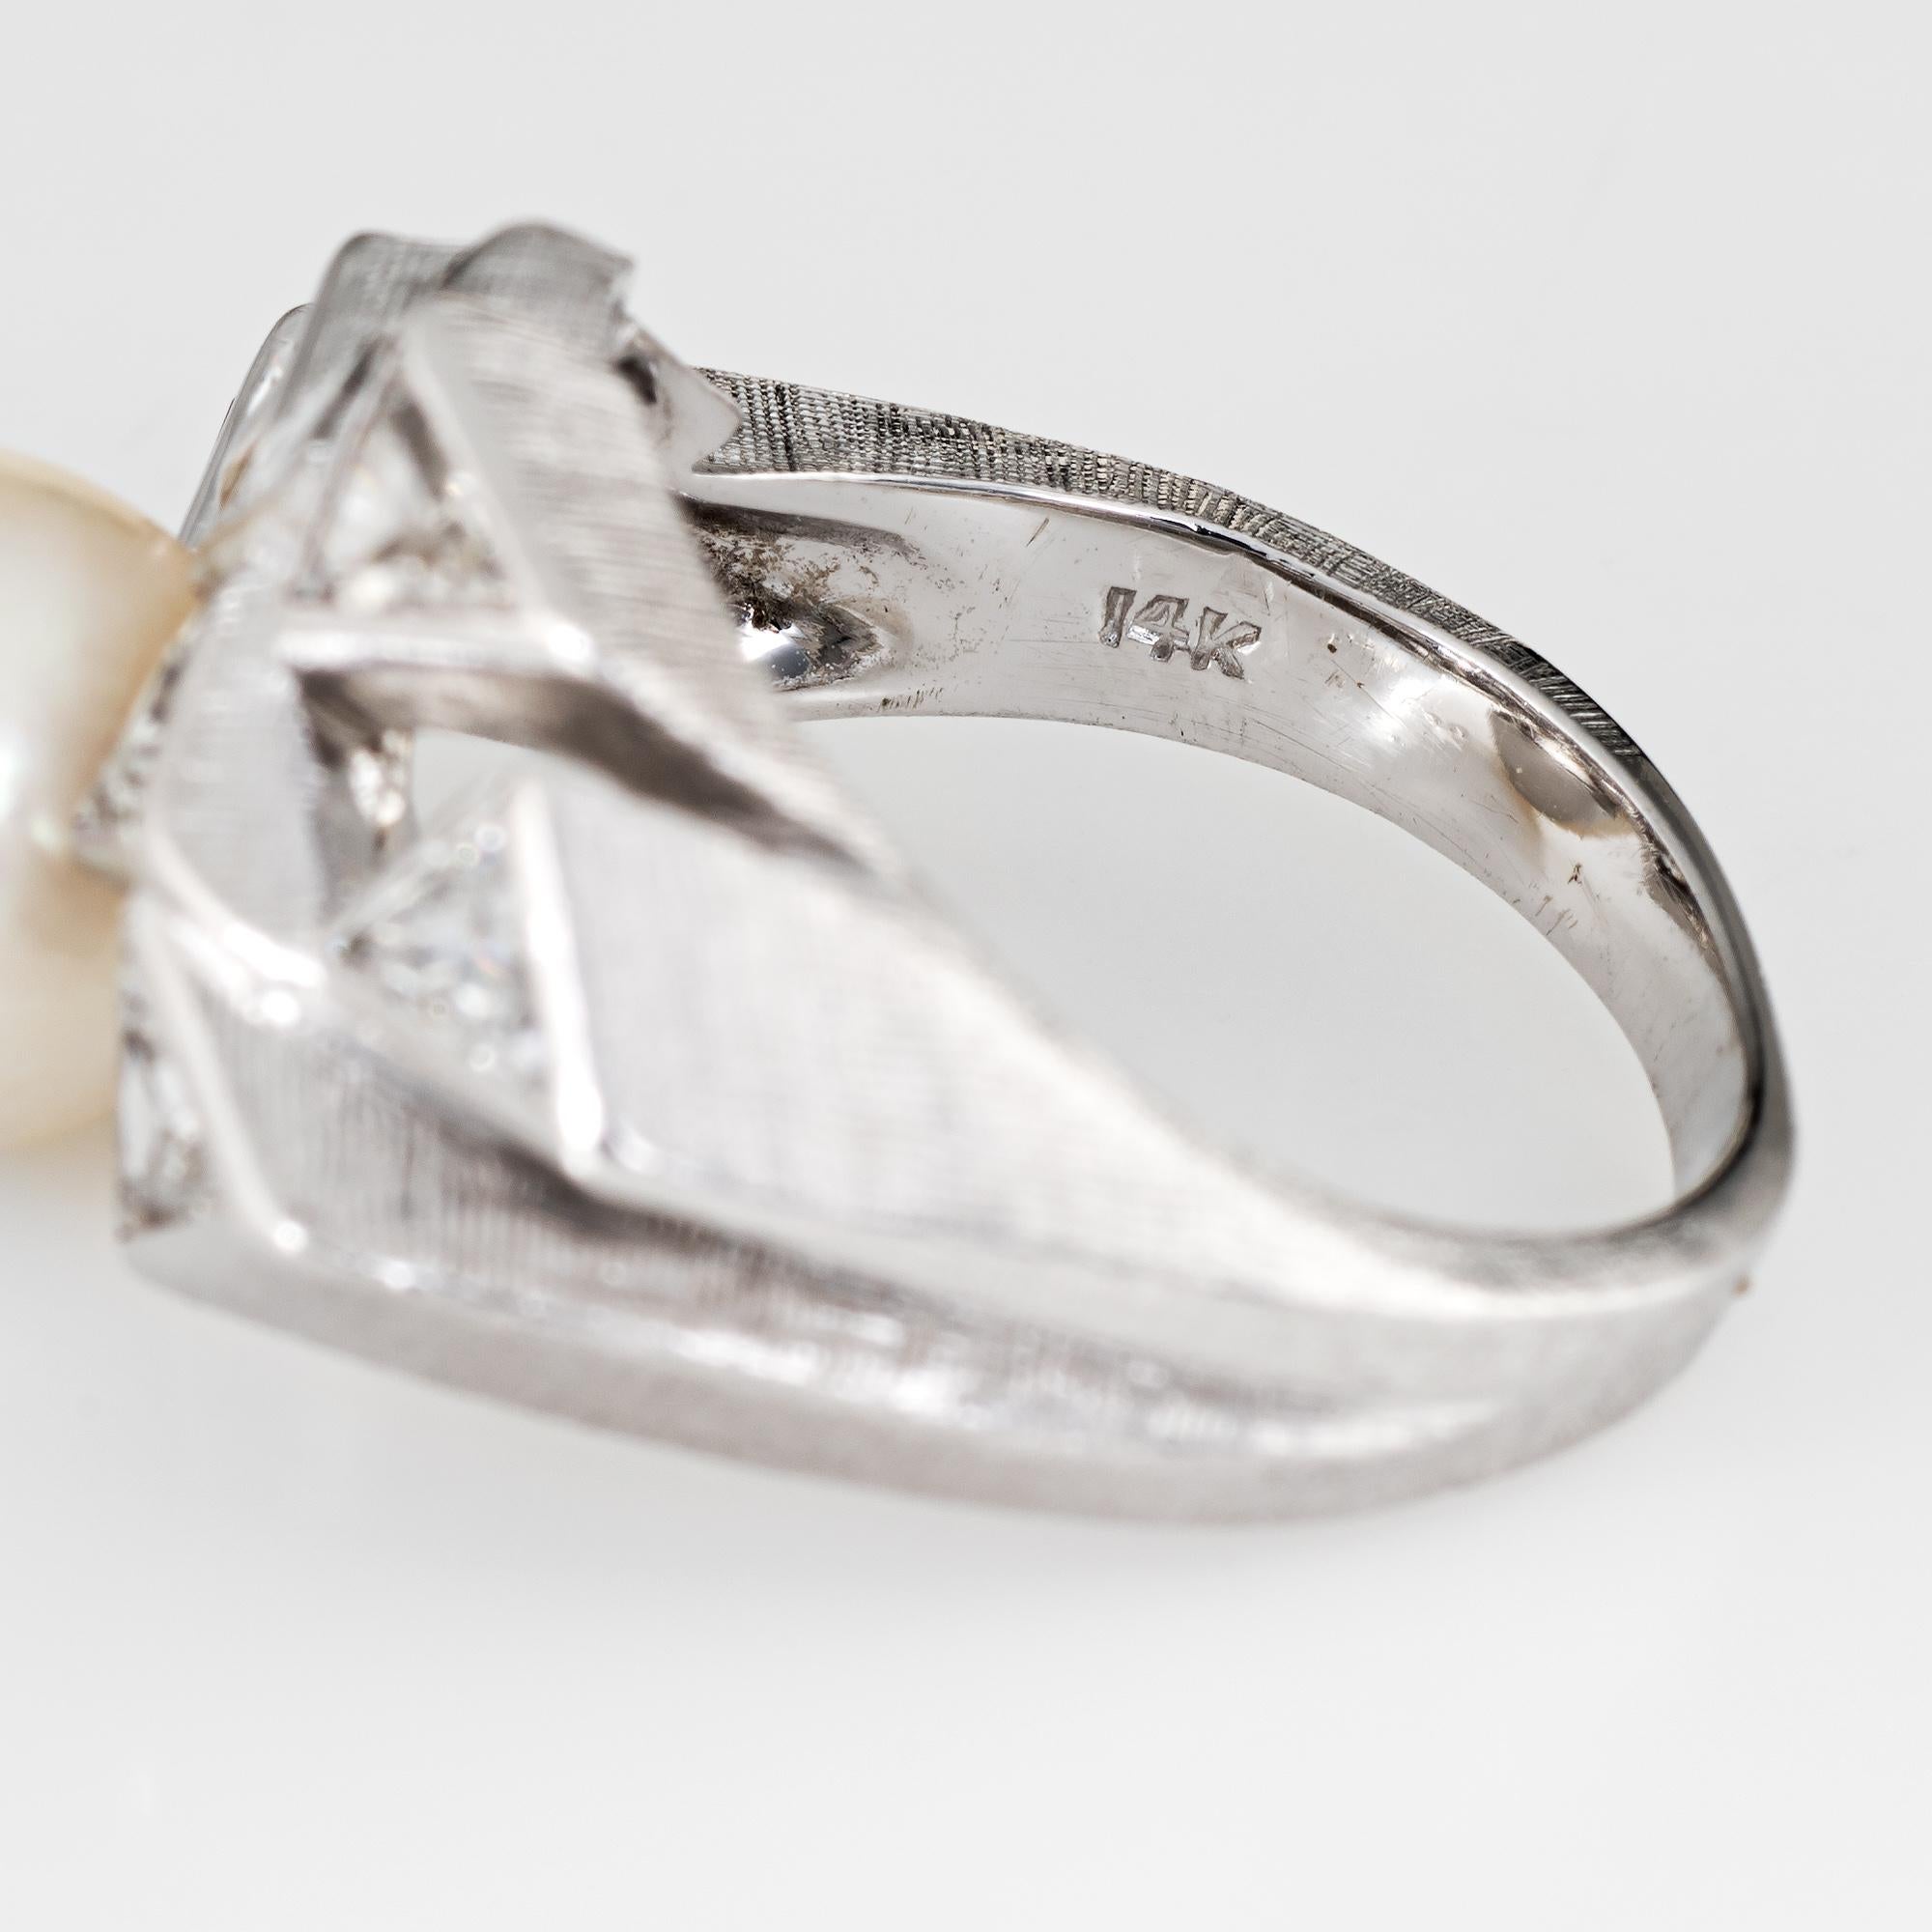 1980s Trillion Diamond Cultured Pearl Ring 14 Karat White Gold Estate Fine 1